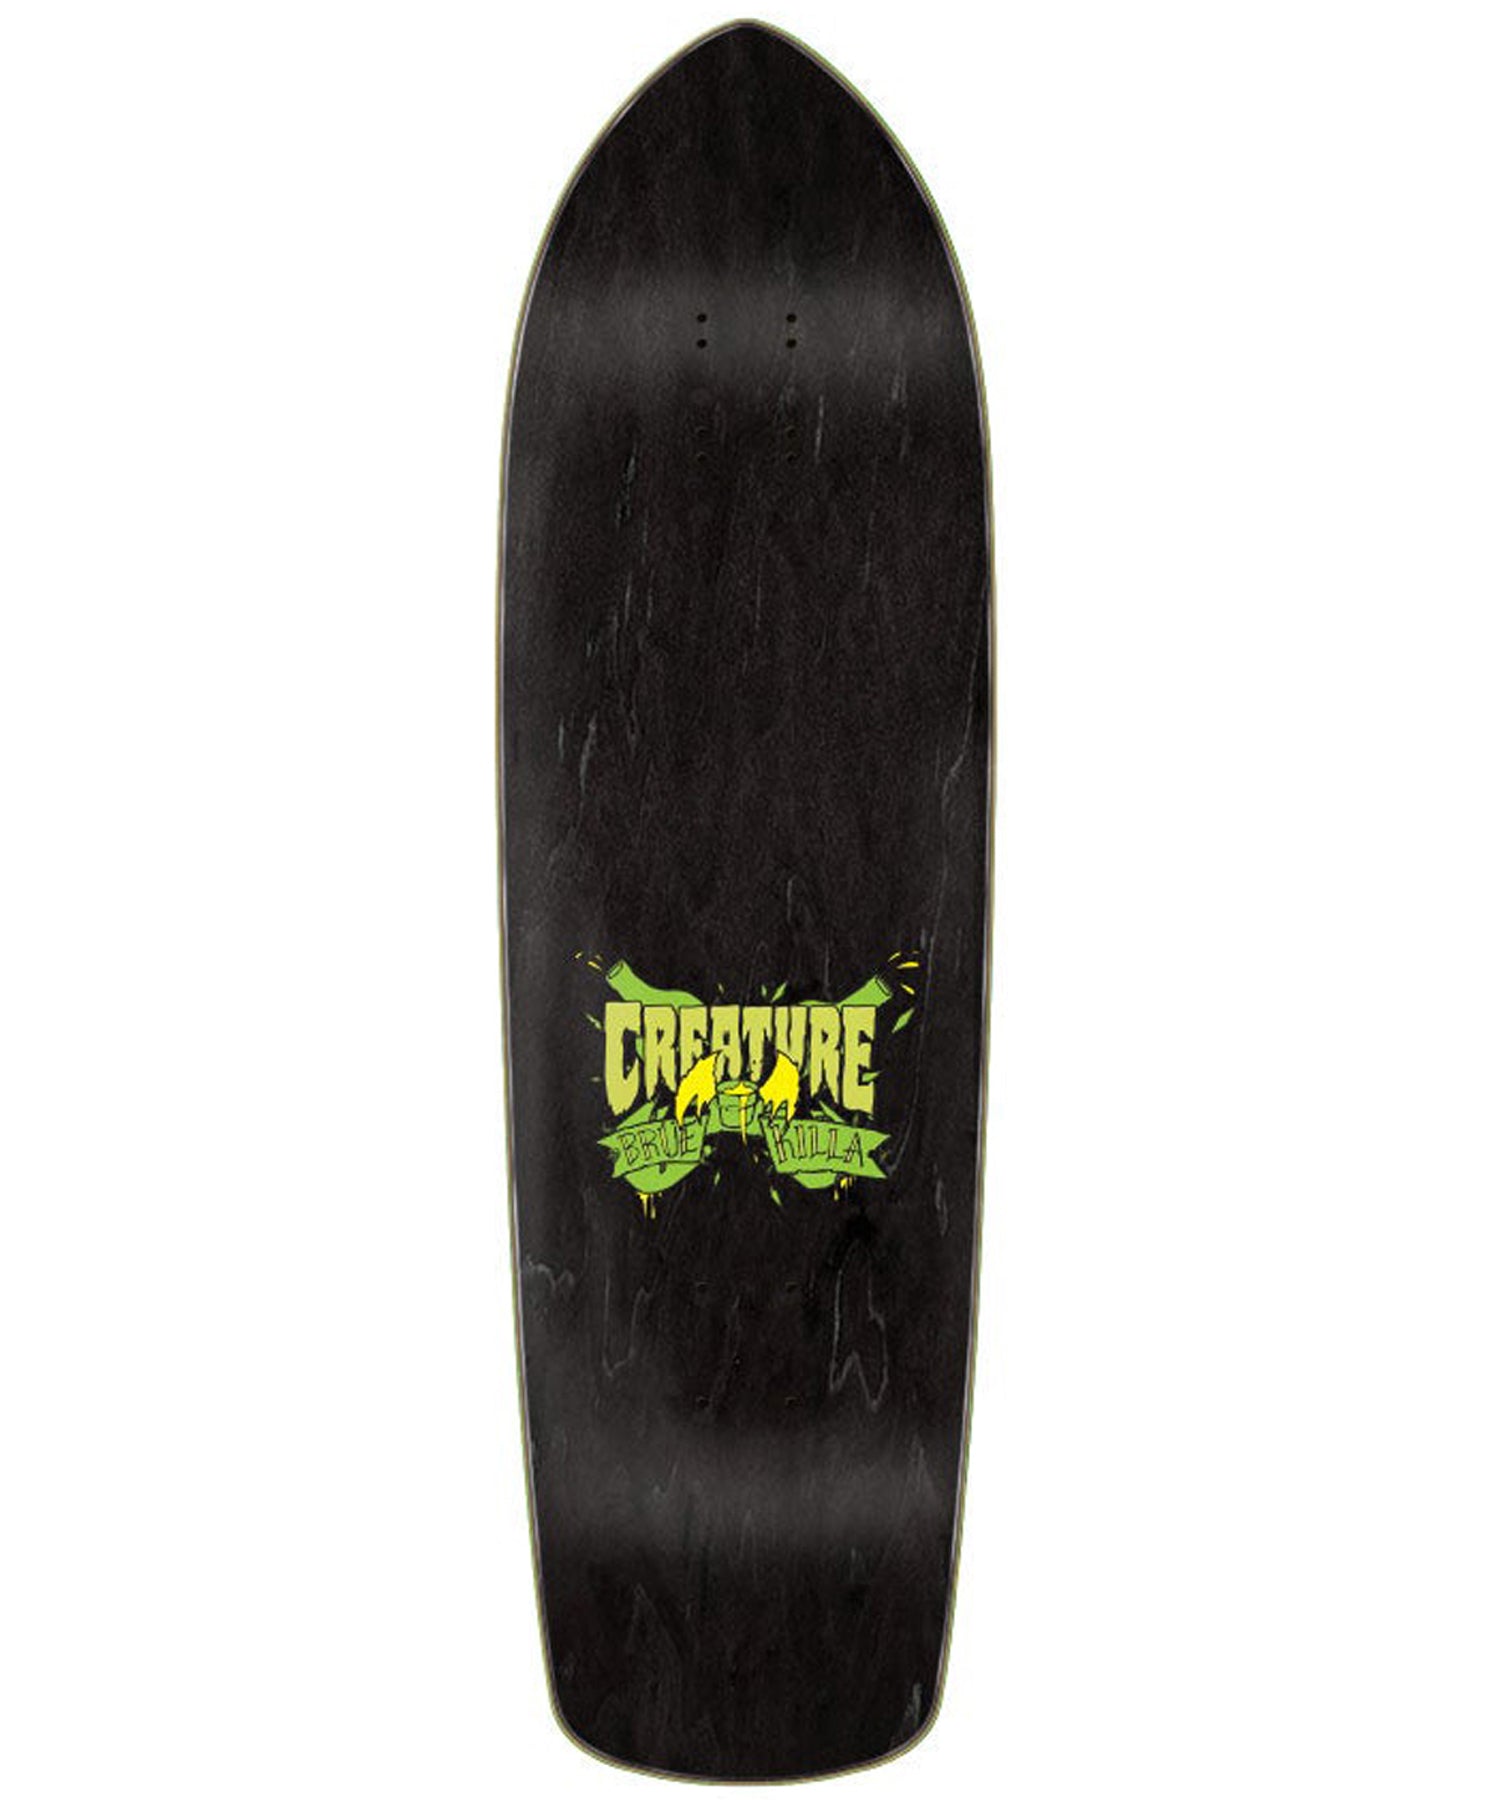 Creature Brue Killer ,tabla de skate de calidad ,con gráficos vistosos ,7 laminas de arce y cola epoxi.